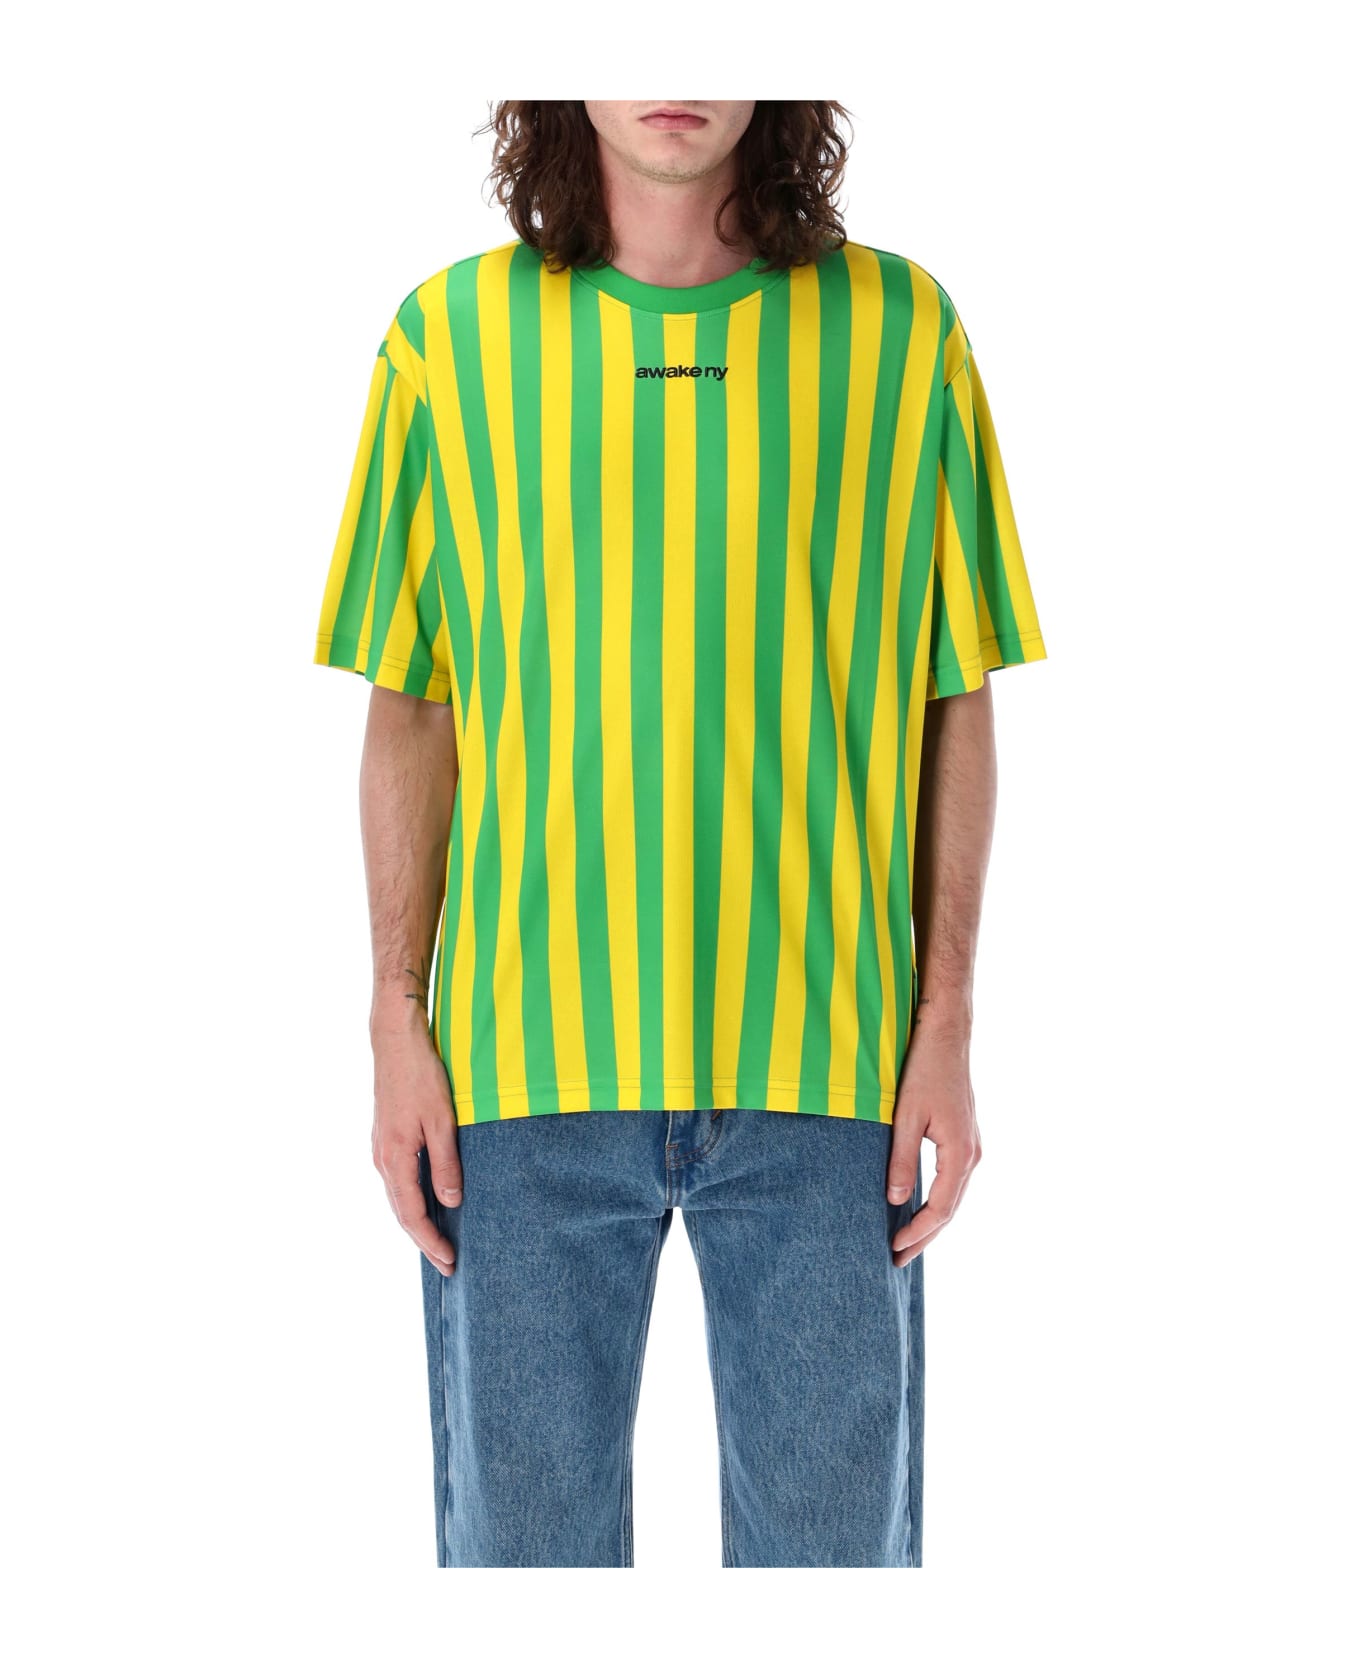 Awake NY Soccer Jersey T-shirt - YELLOW シャツ